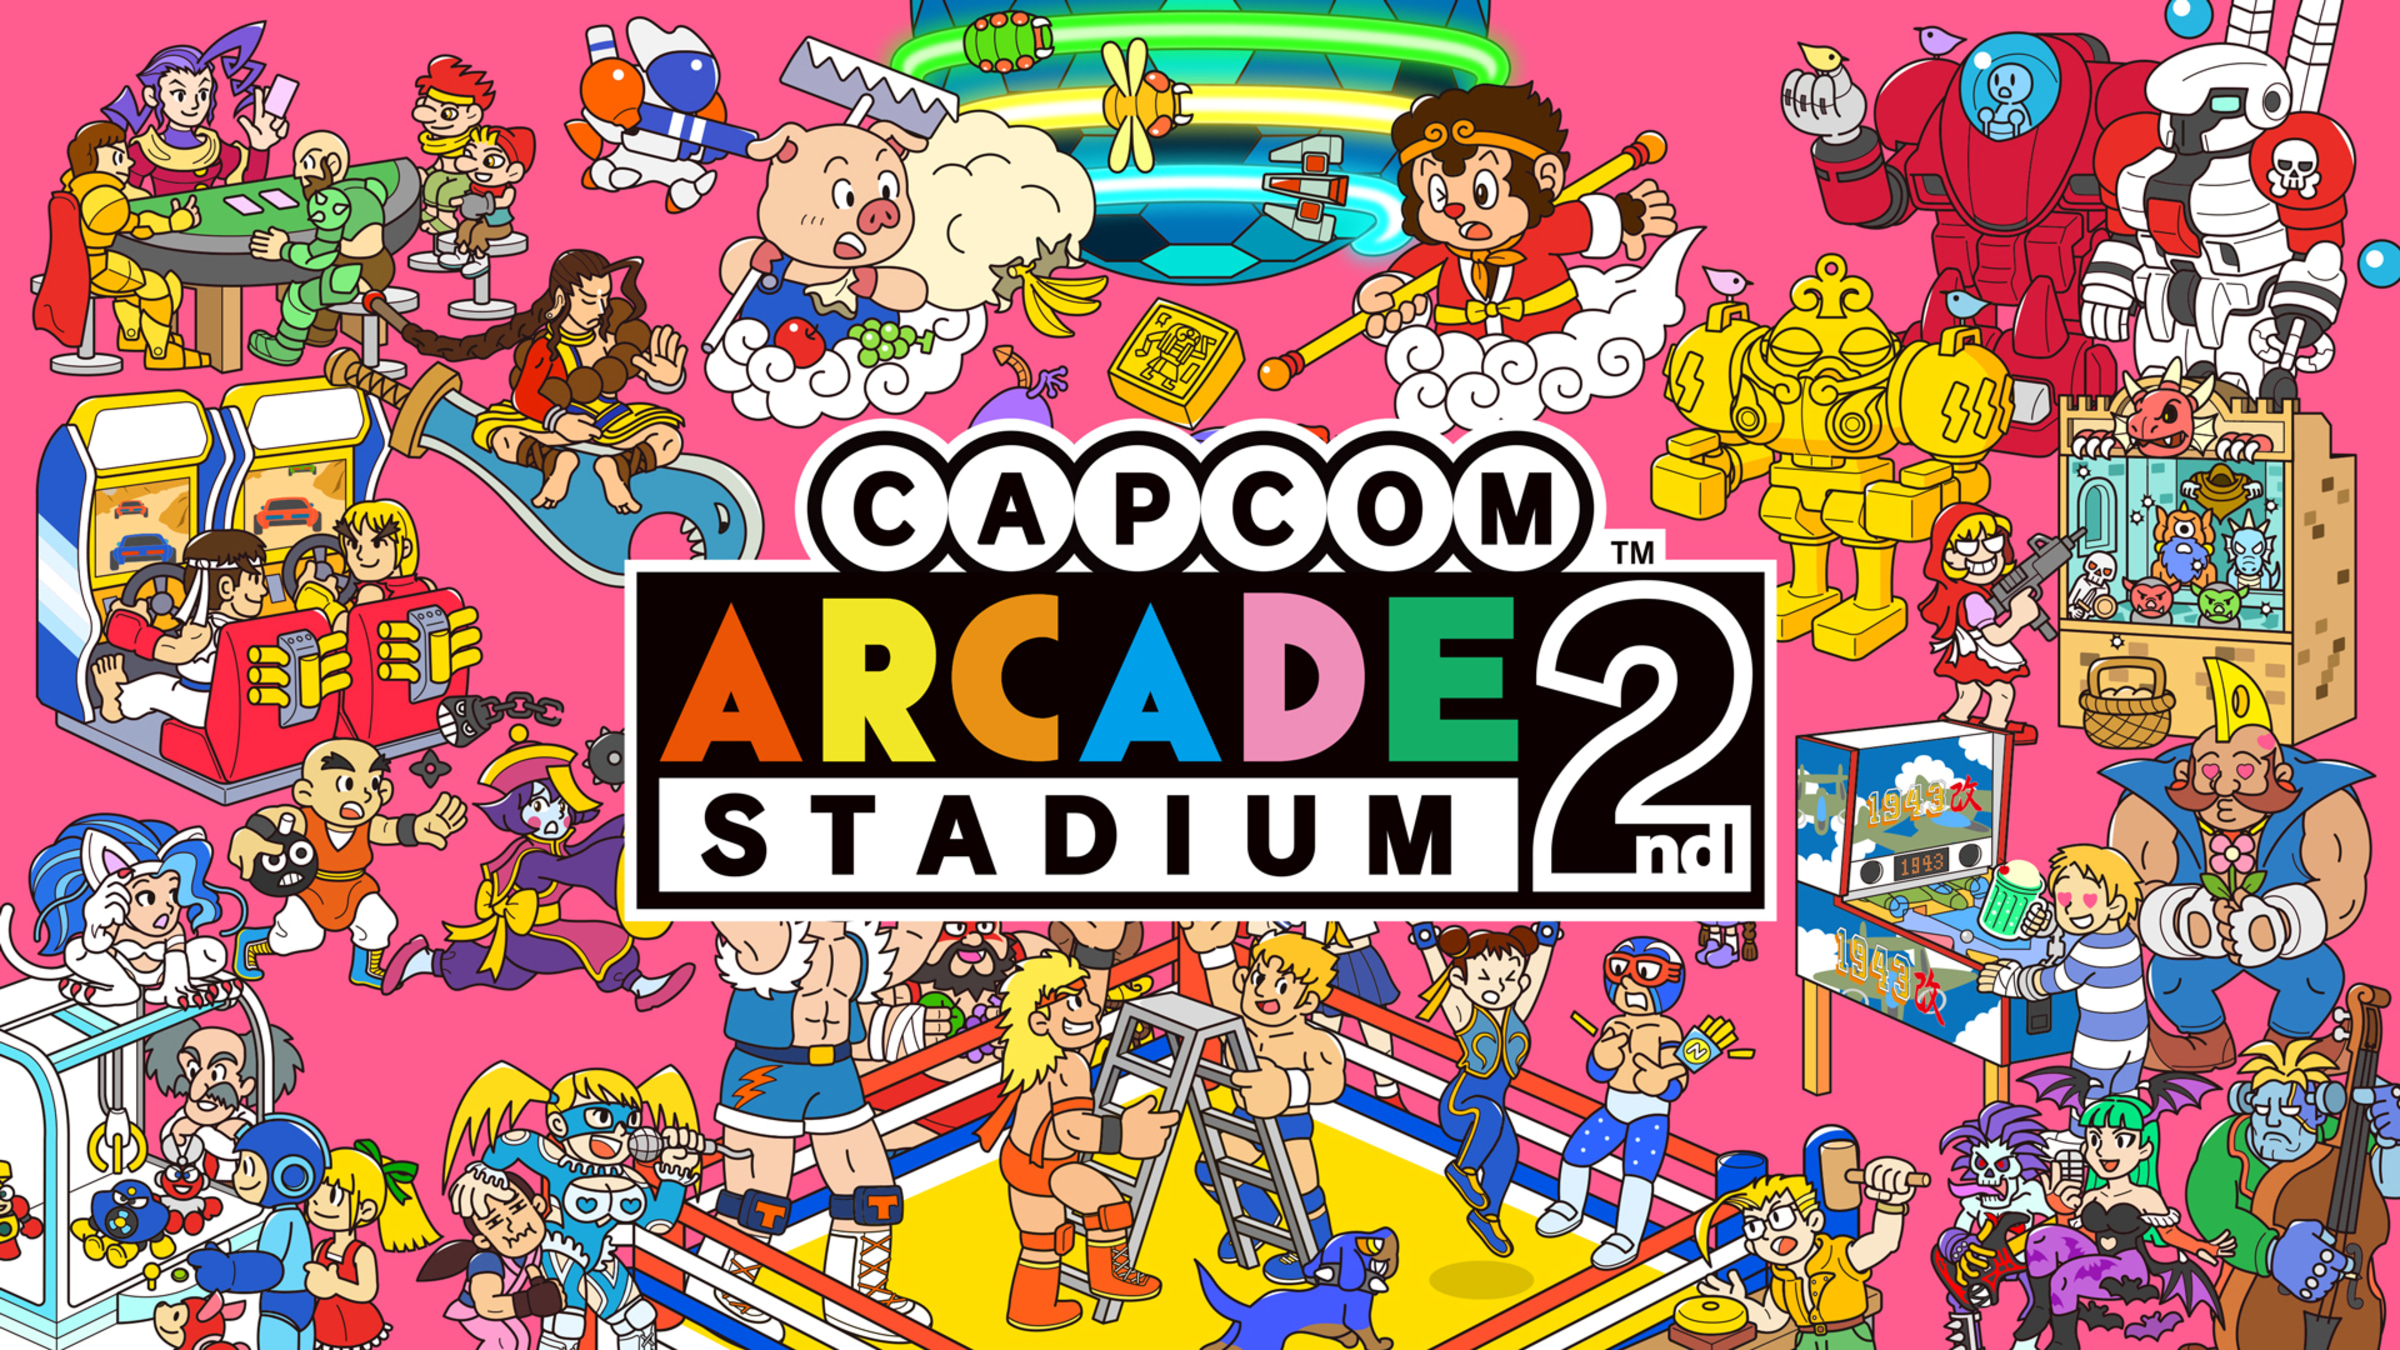 Capcom Arcade Stadium, Aplicações de download da Nintendo Switch, Jogos